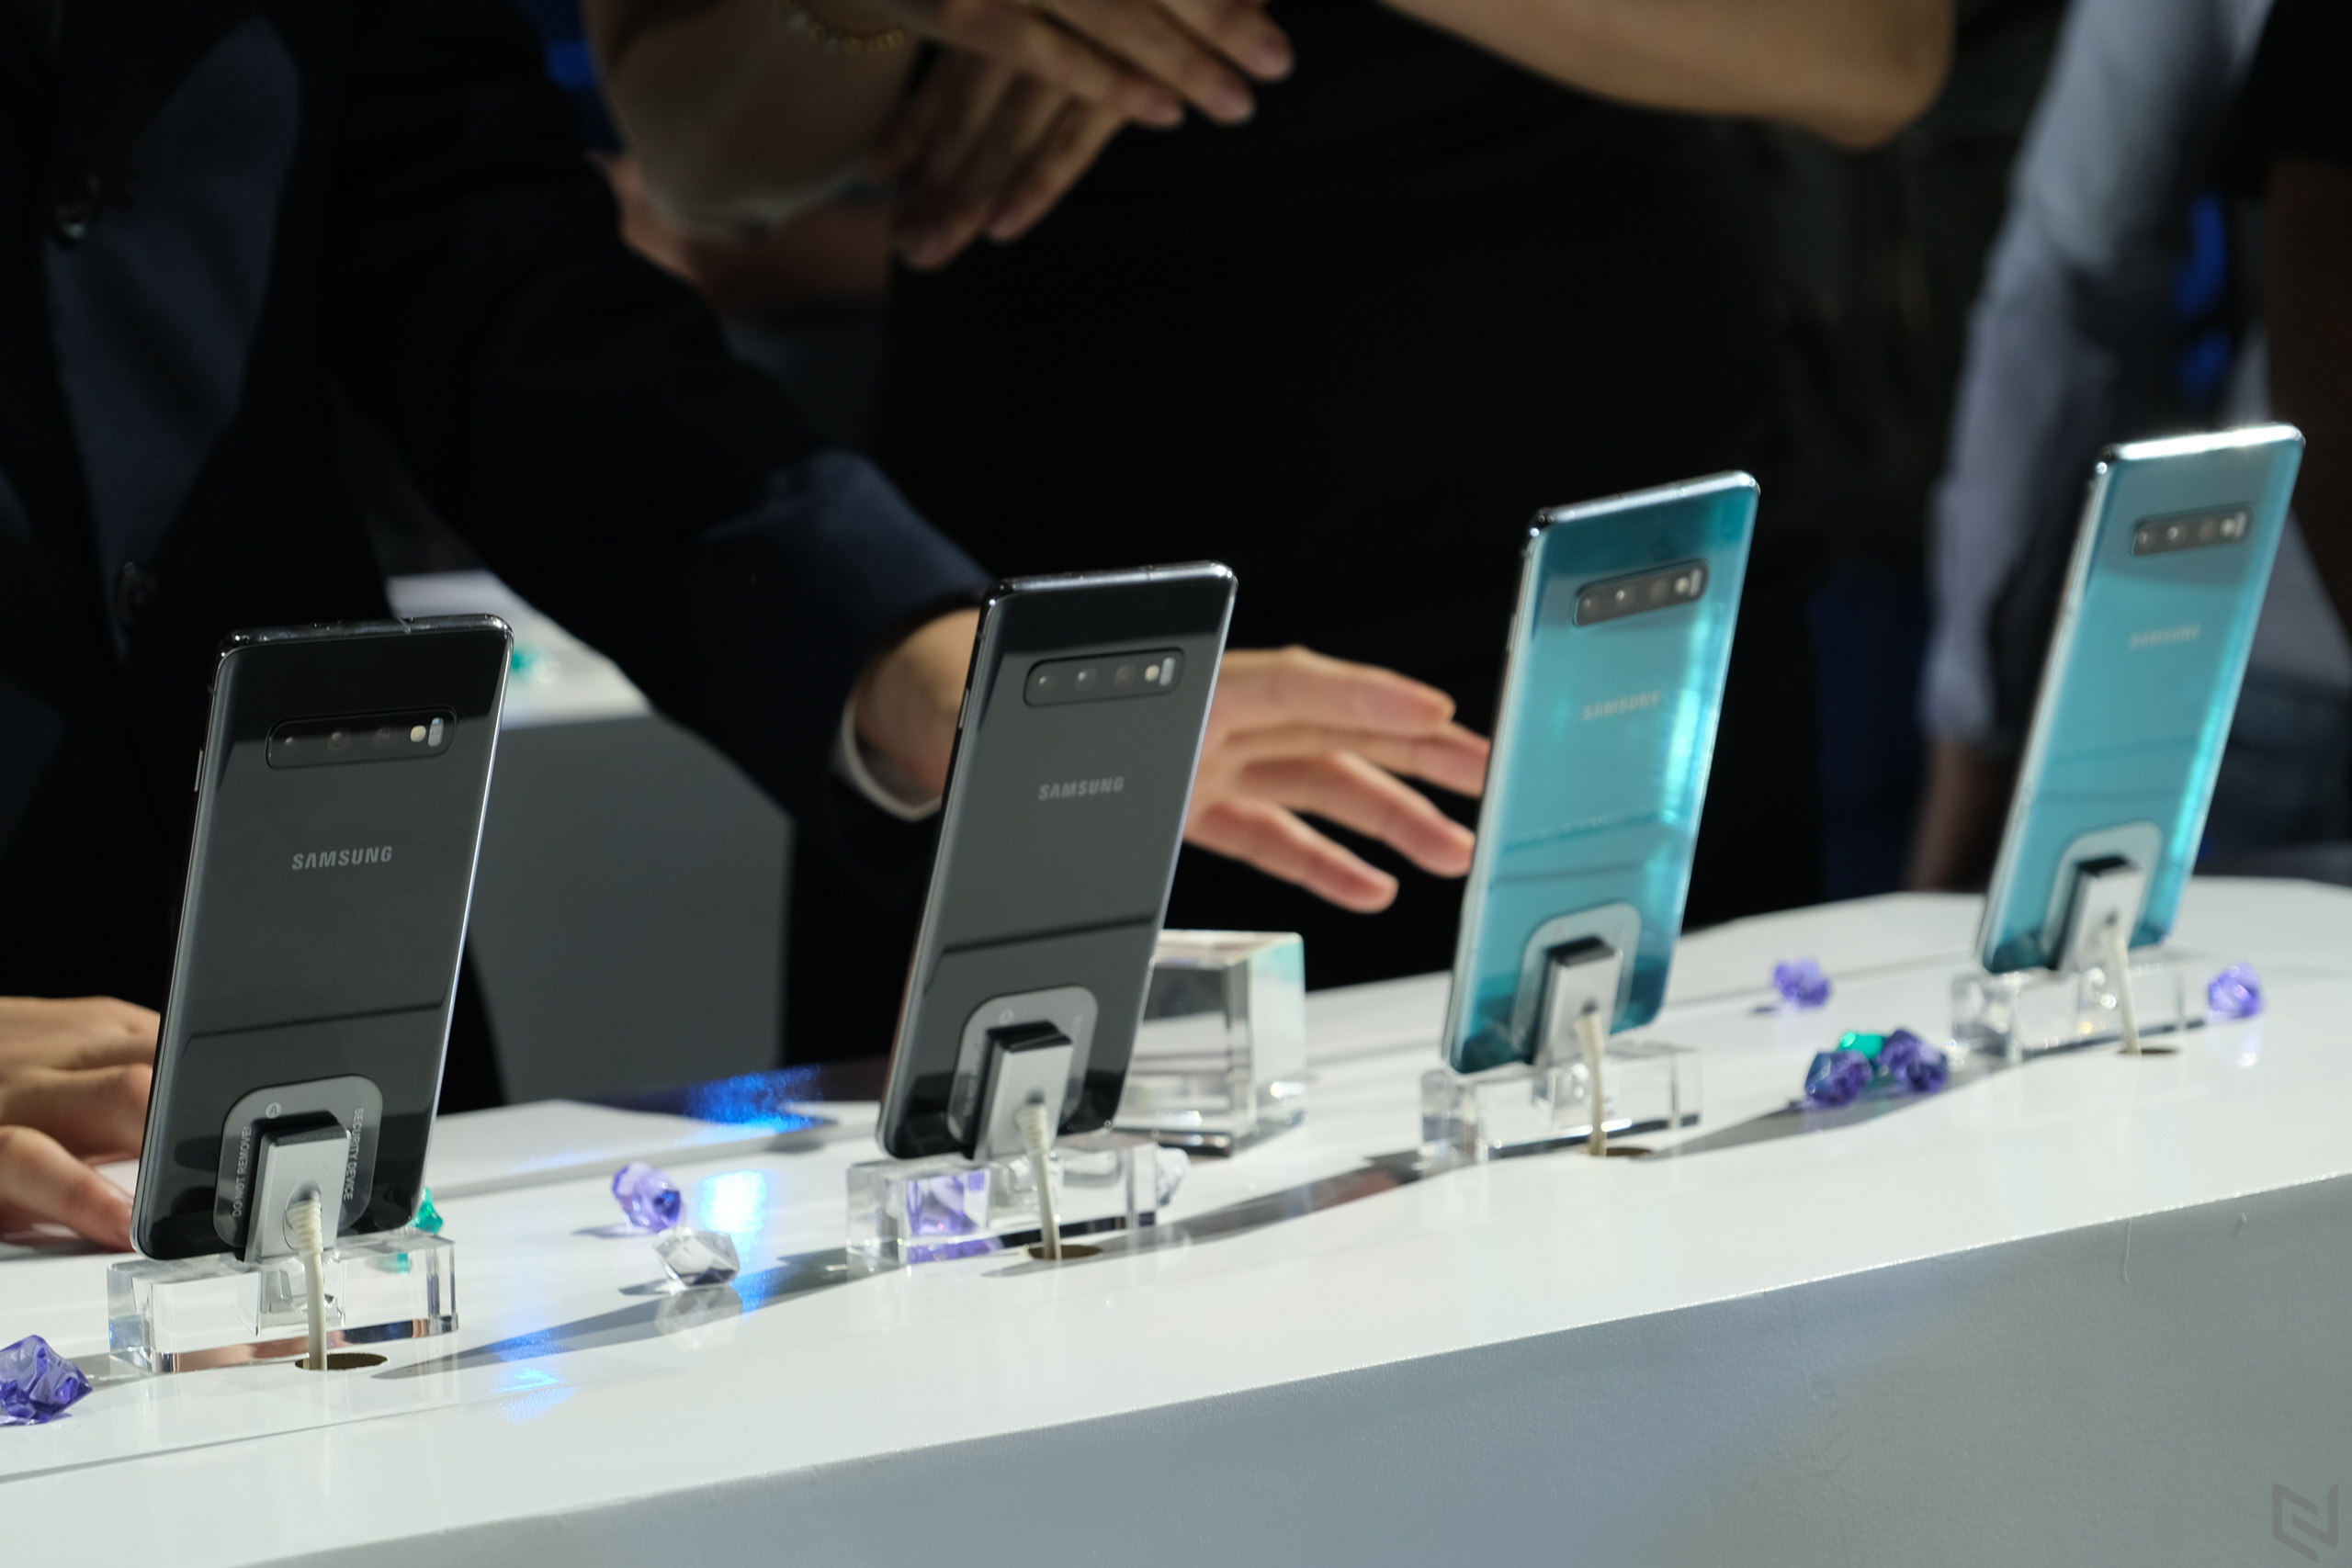 Đặt gạch Samsung Galaxy S10/S10 Plus nhận quà 10 triệu đồng tại Di Động Việt